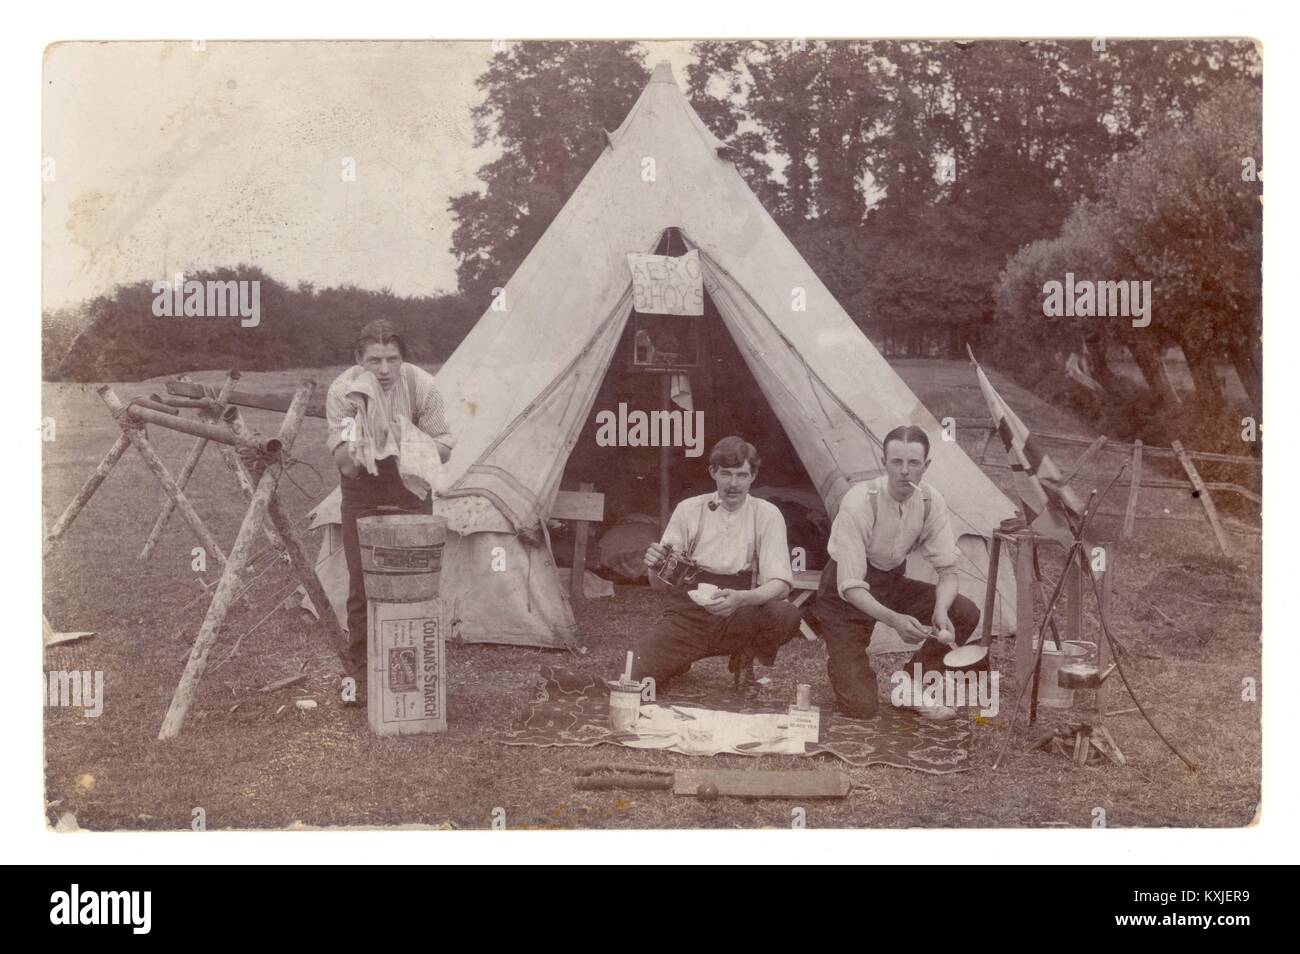 Carte postale du début de la première Guerre mondiale de jeunes hommes campant, signe Aero Bhoys dans la tente, peut-être de jeunes aviateurs de Brooklands Aero Club, Surrey ou surnom de camp ou tout simplement de jeunes hommes s'amusant, vers 1914 Banque D'Images